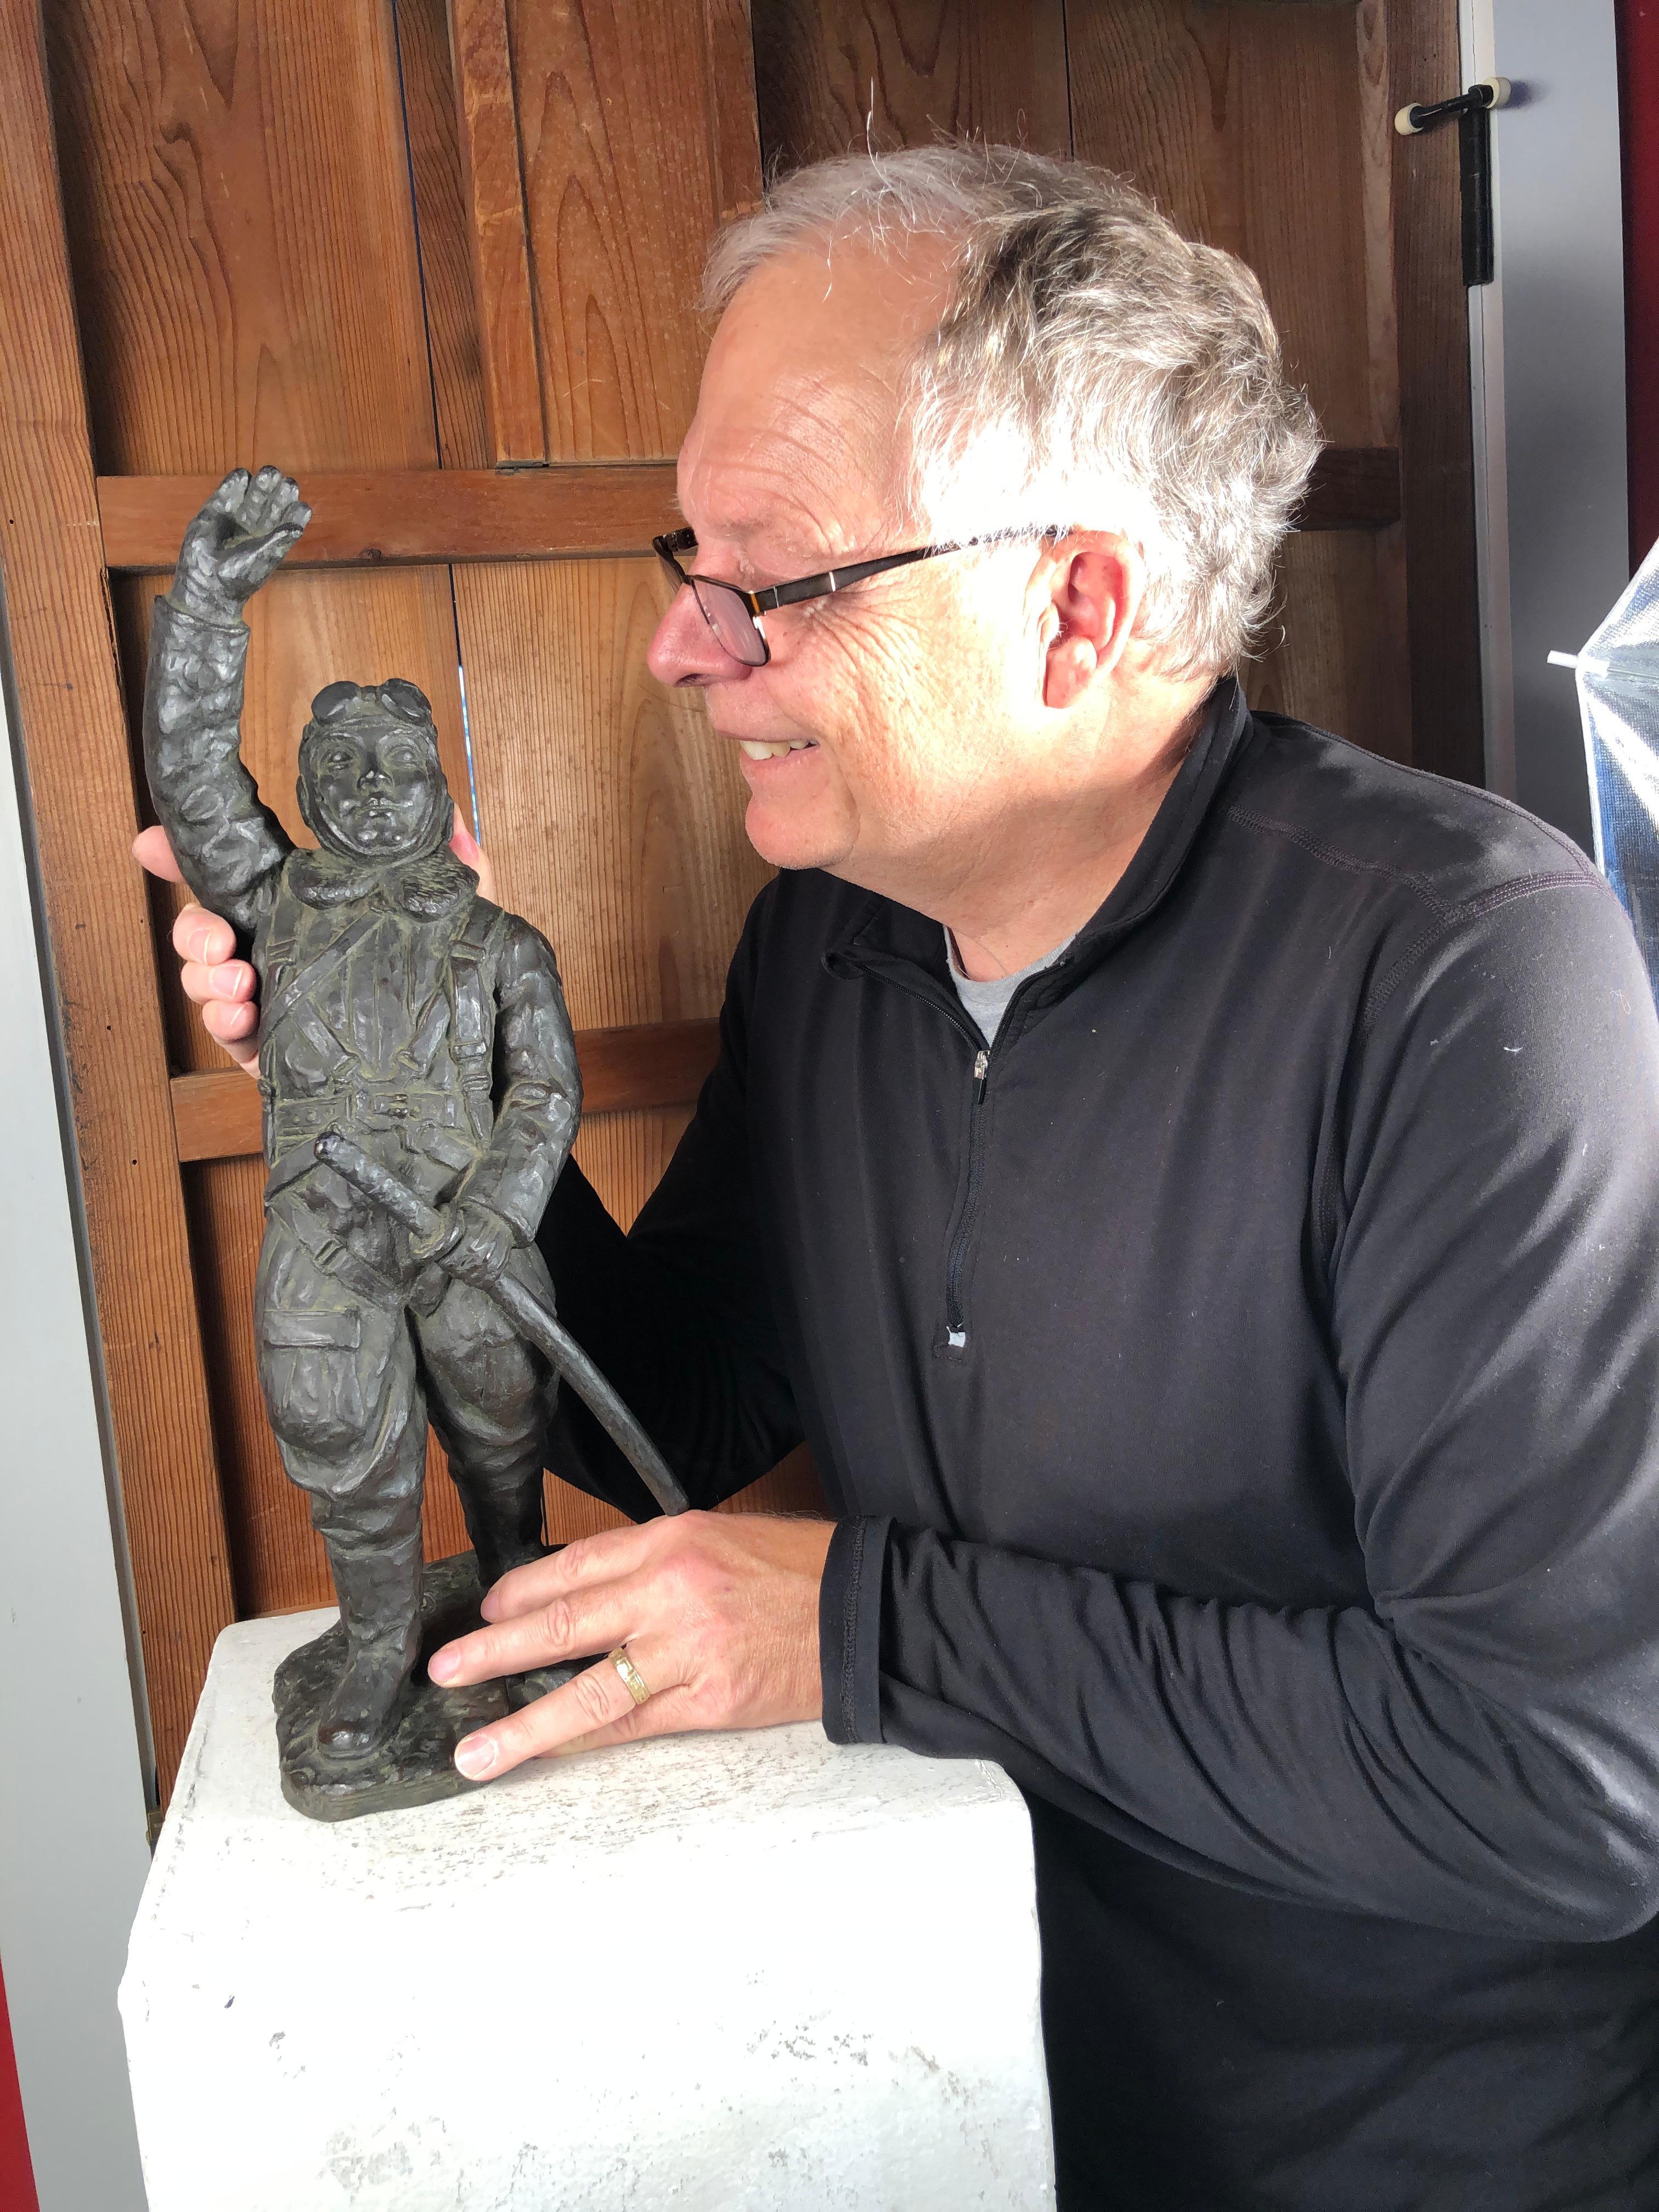 Ungewöhnliche Gelegenheit:: einen authentischen Schatz aus dem Zweiten Weltkrieg zu sammeln:

Japanische antike Bronzeskulptur eines Samurai 